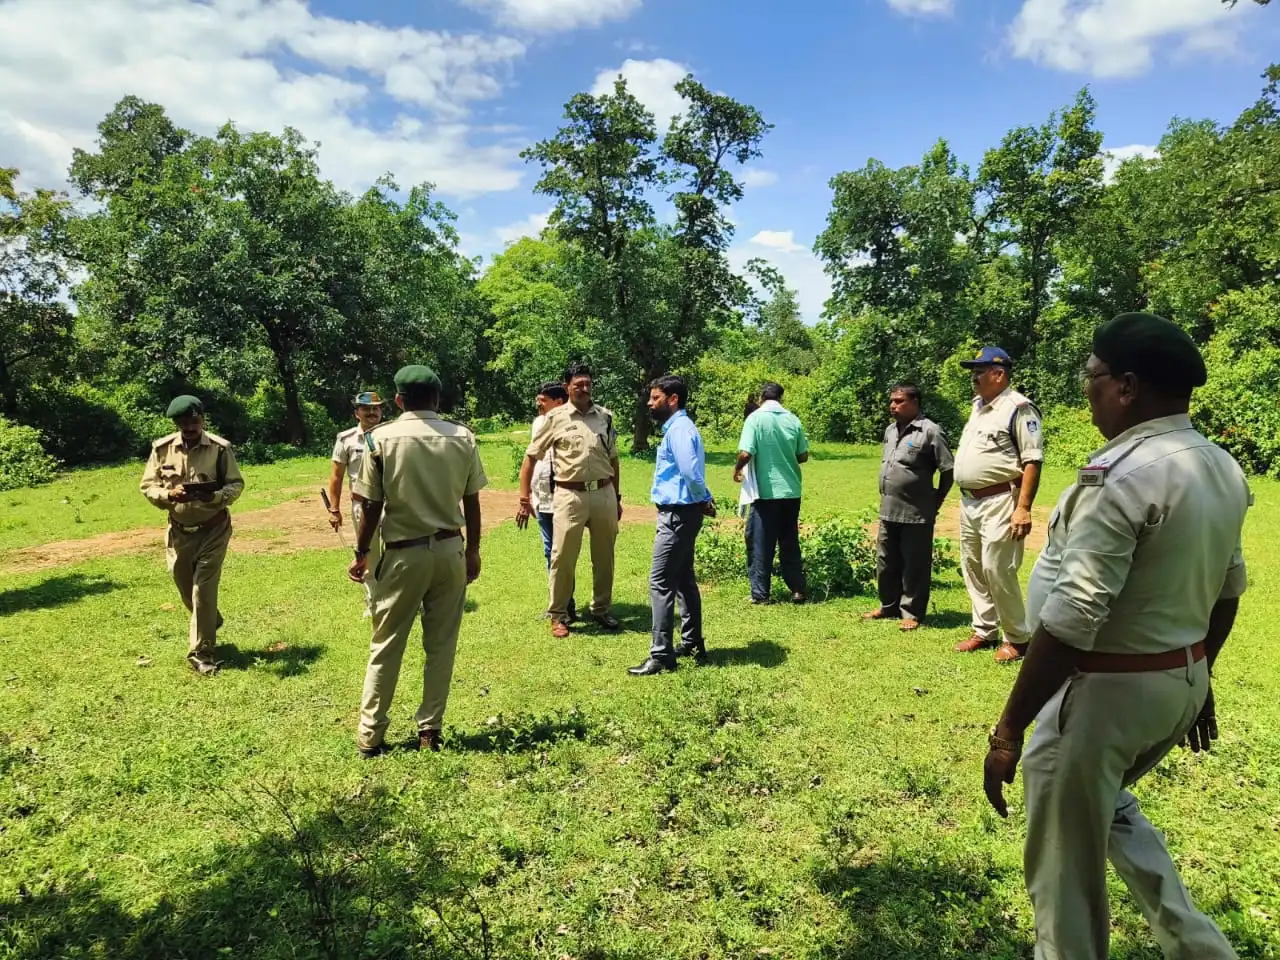 जंगली हाथियों से प्रभावित क्षेत्र का कलेक्टर, एसपी, डीएफओ ने निरीक्षण कर लिया जायजा